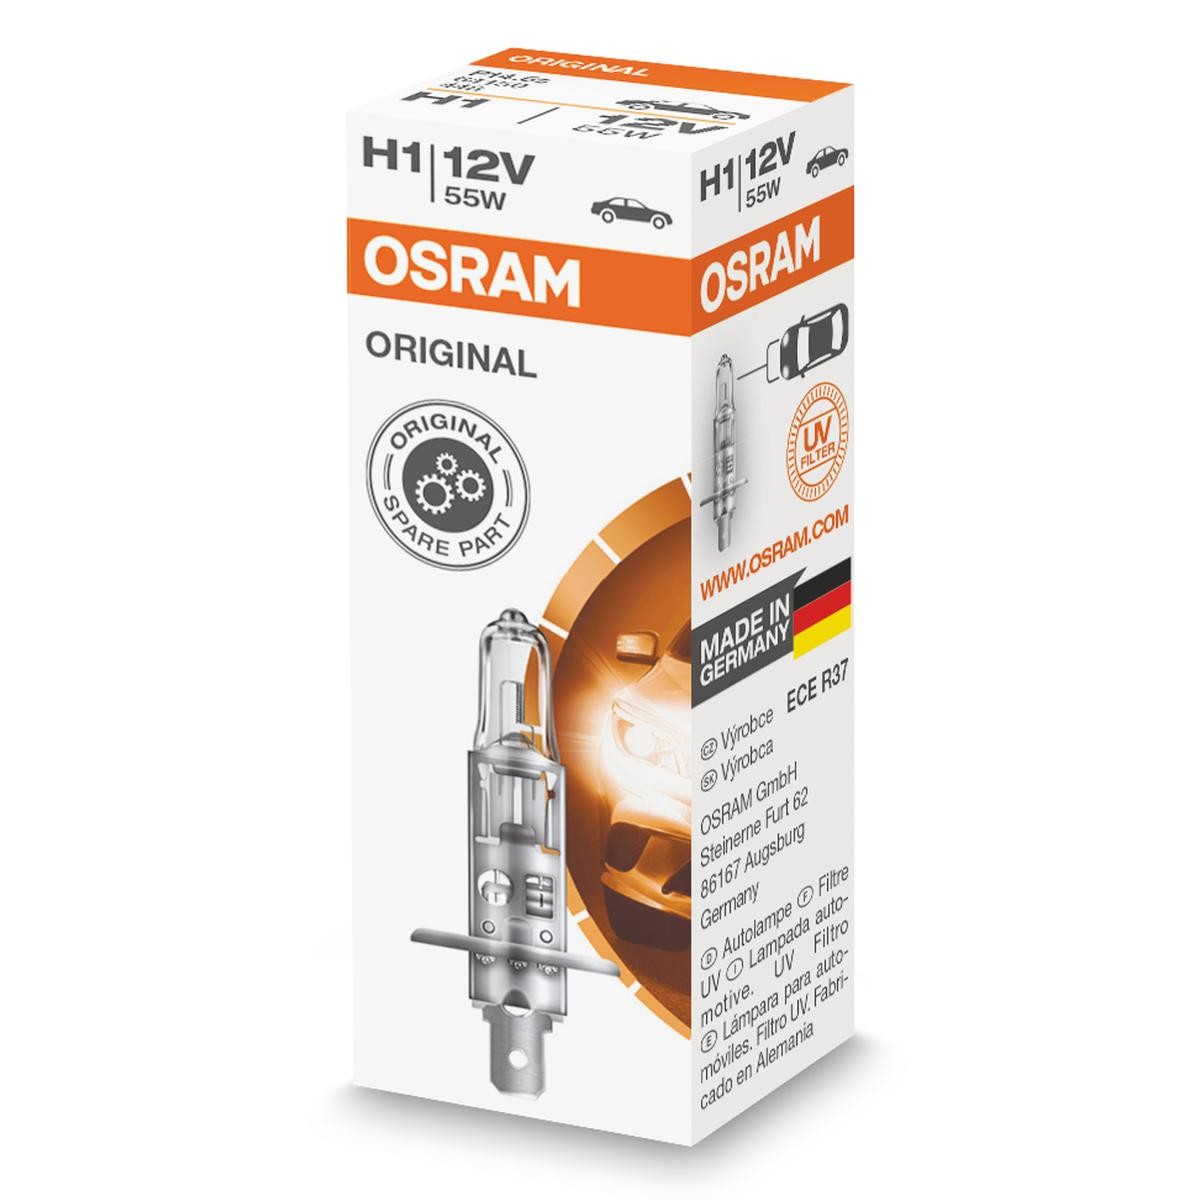 Opel dele af original kvalitet 
H1 OSRAM 64150